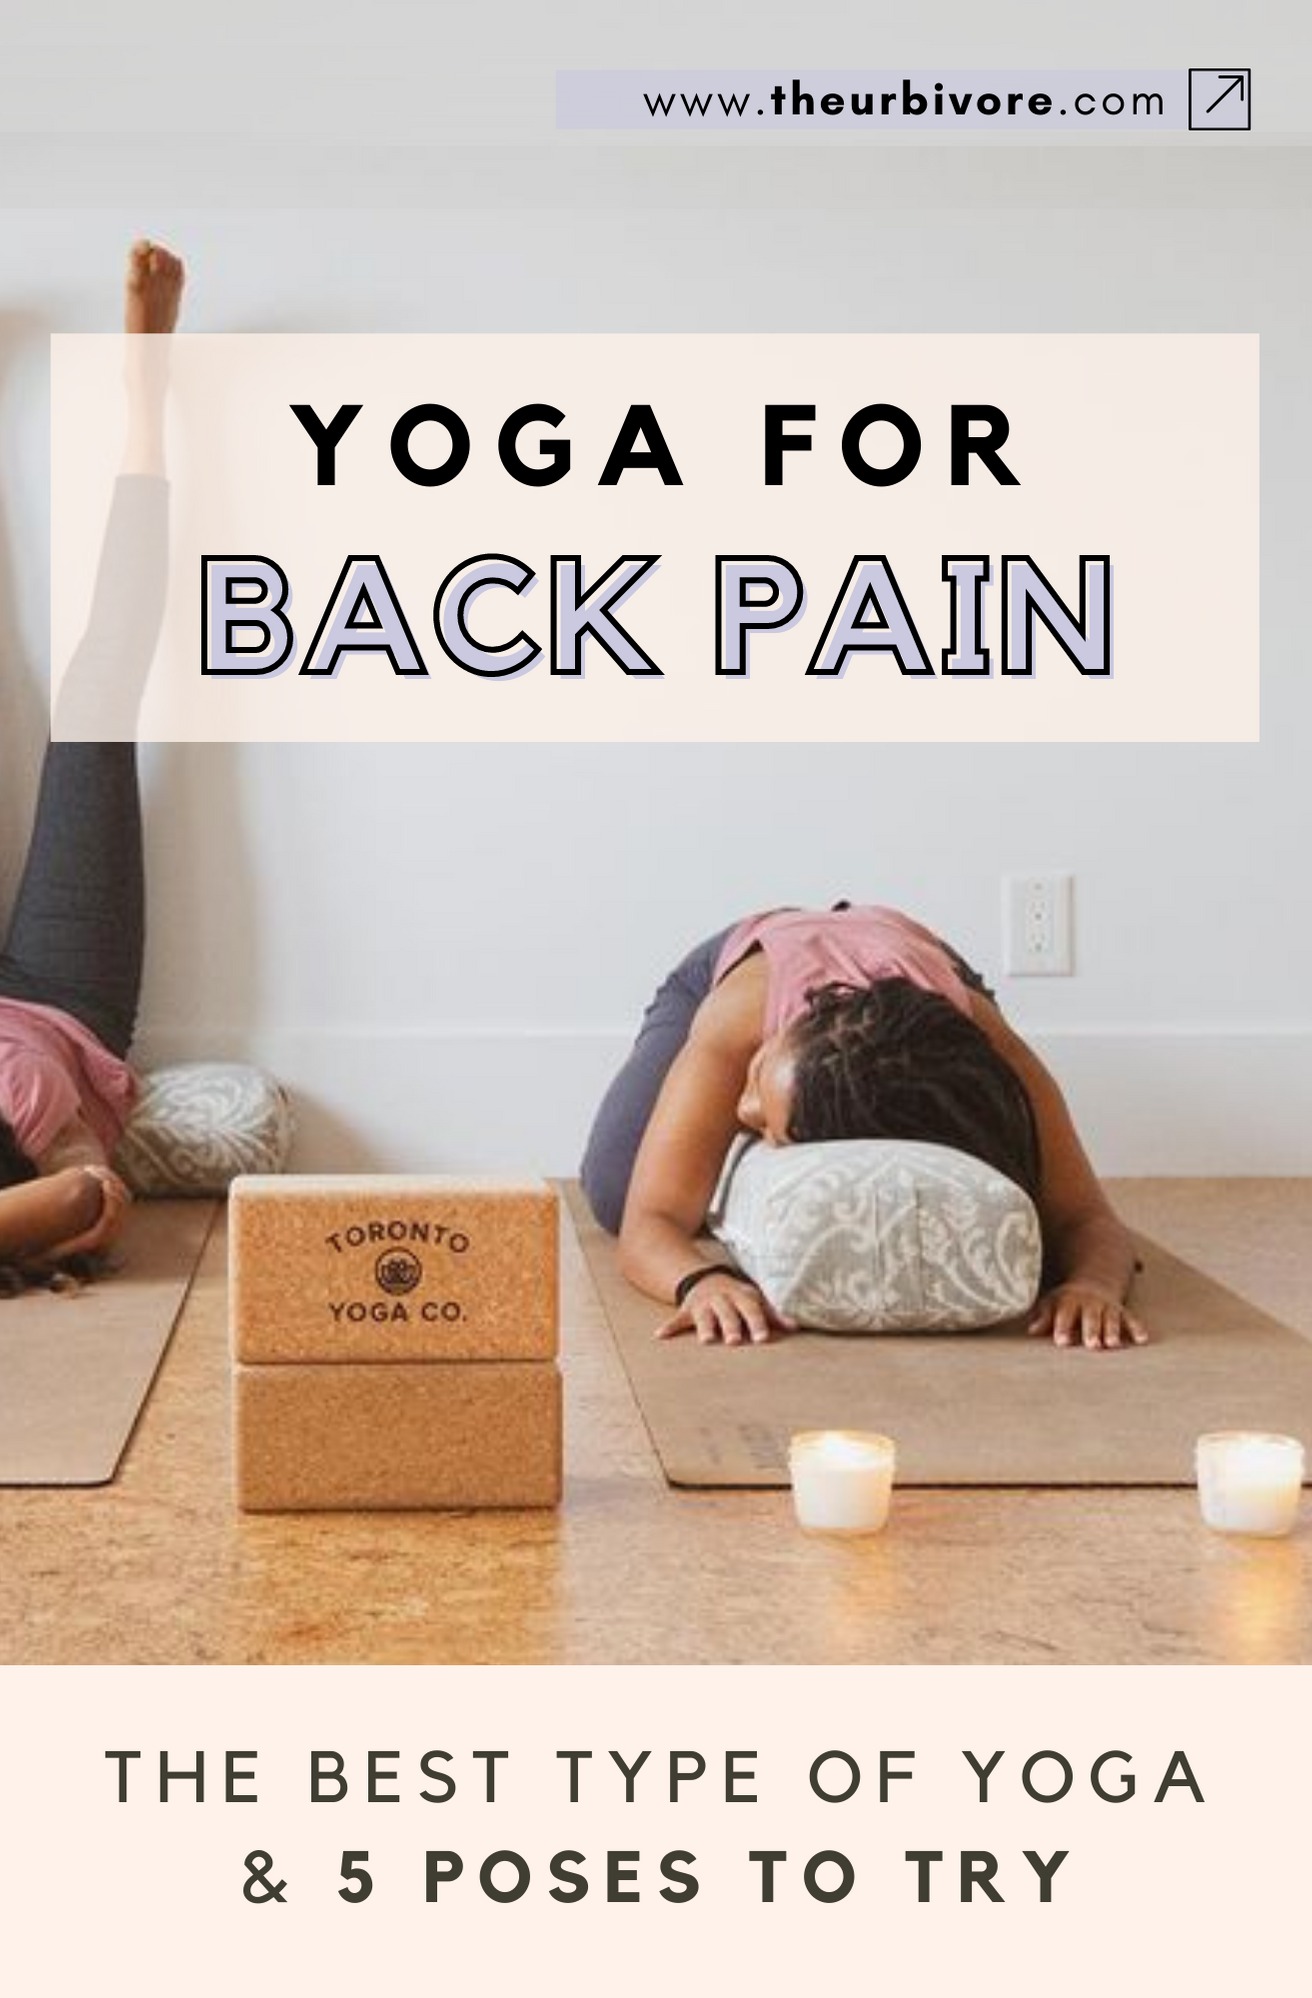 Back Pain Relief Through Yoga - Atlanta, GA - Spine Surgery